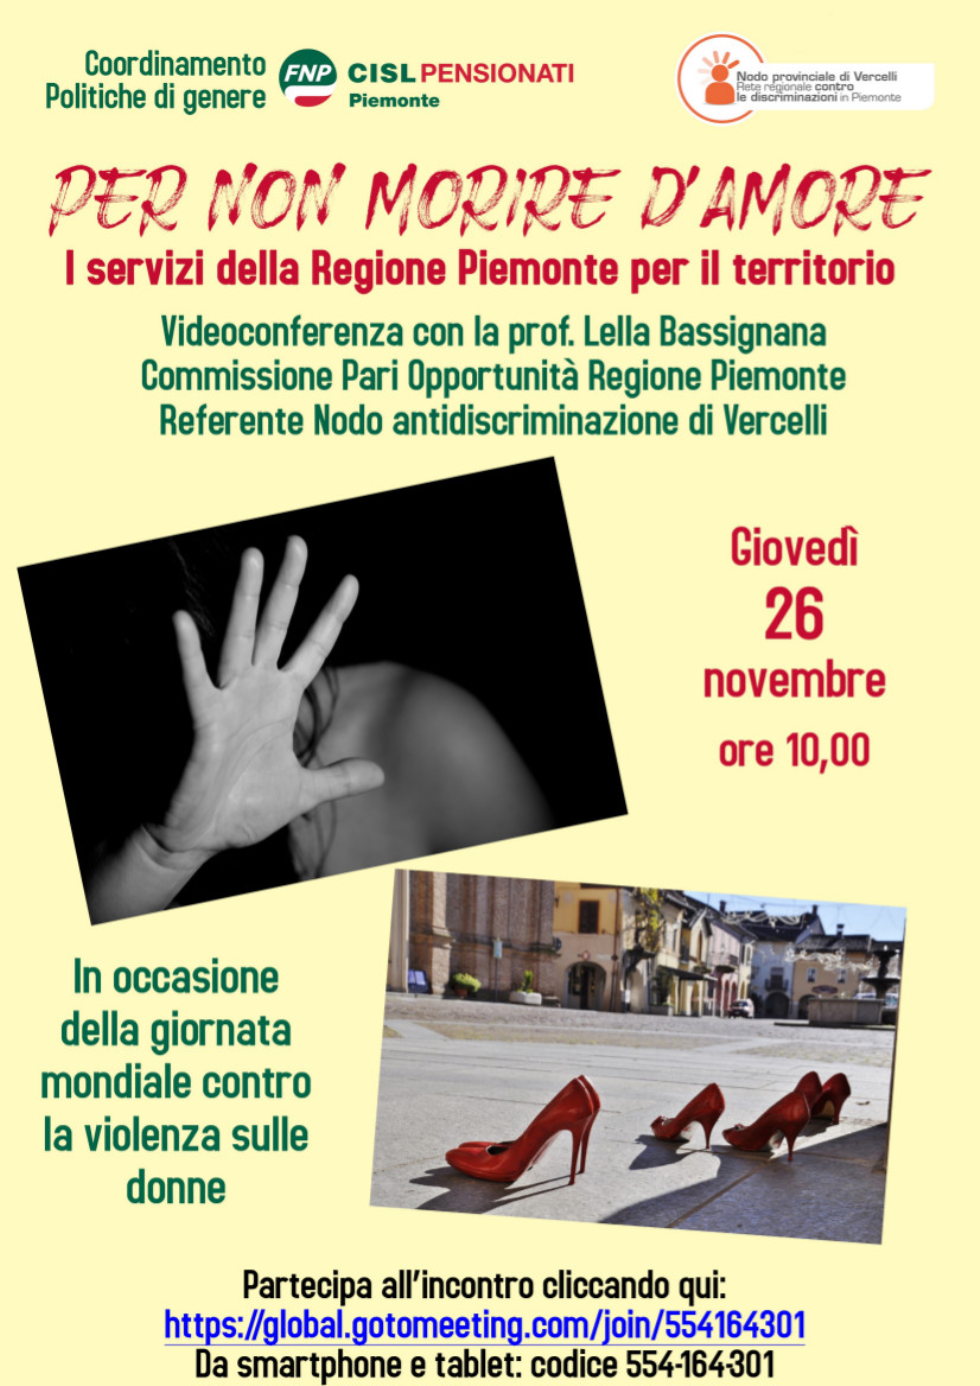 “Per non morire d’amore”: videoconferenza del Coordinamento Politiche di Genere Fnp Piemonte